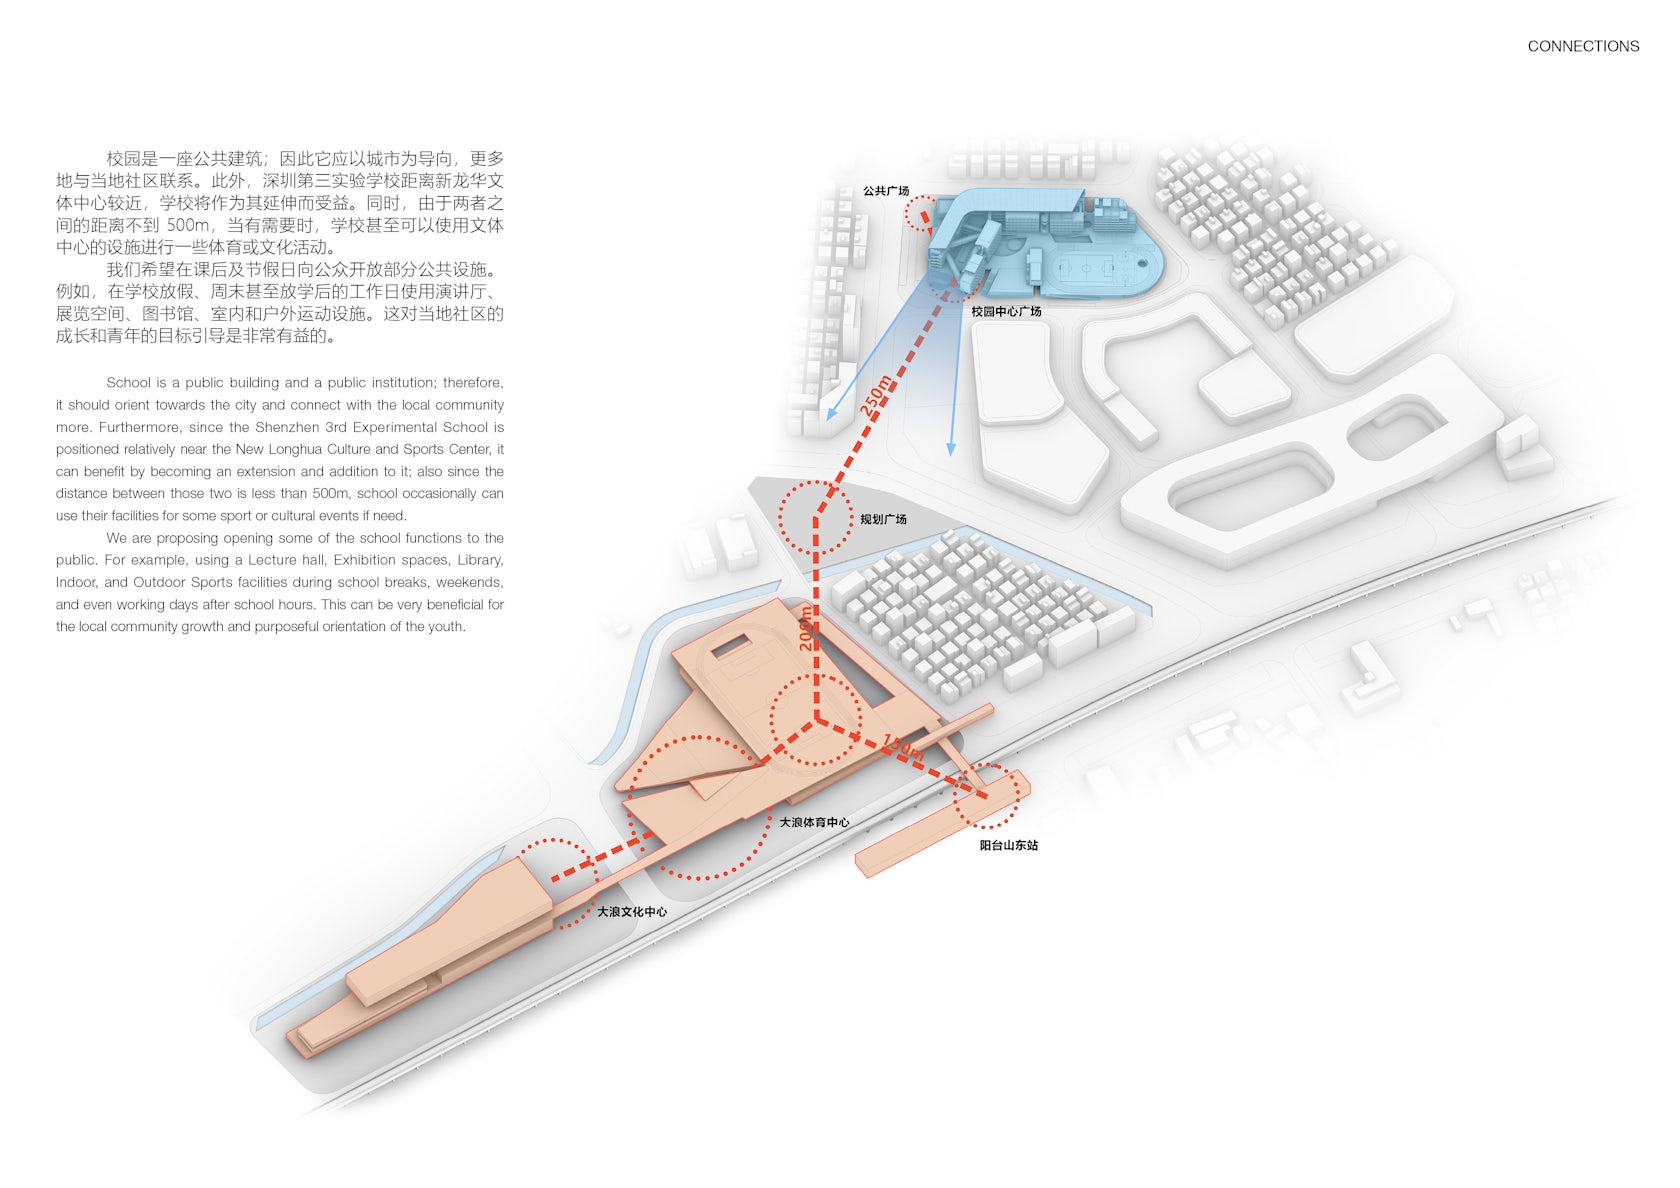 © Shenzhen Huazhu Architectural & Engineering Design Co., Ltd